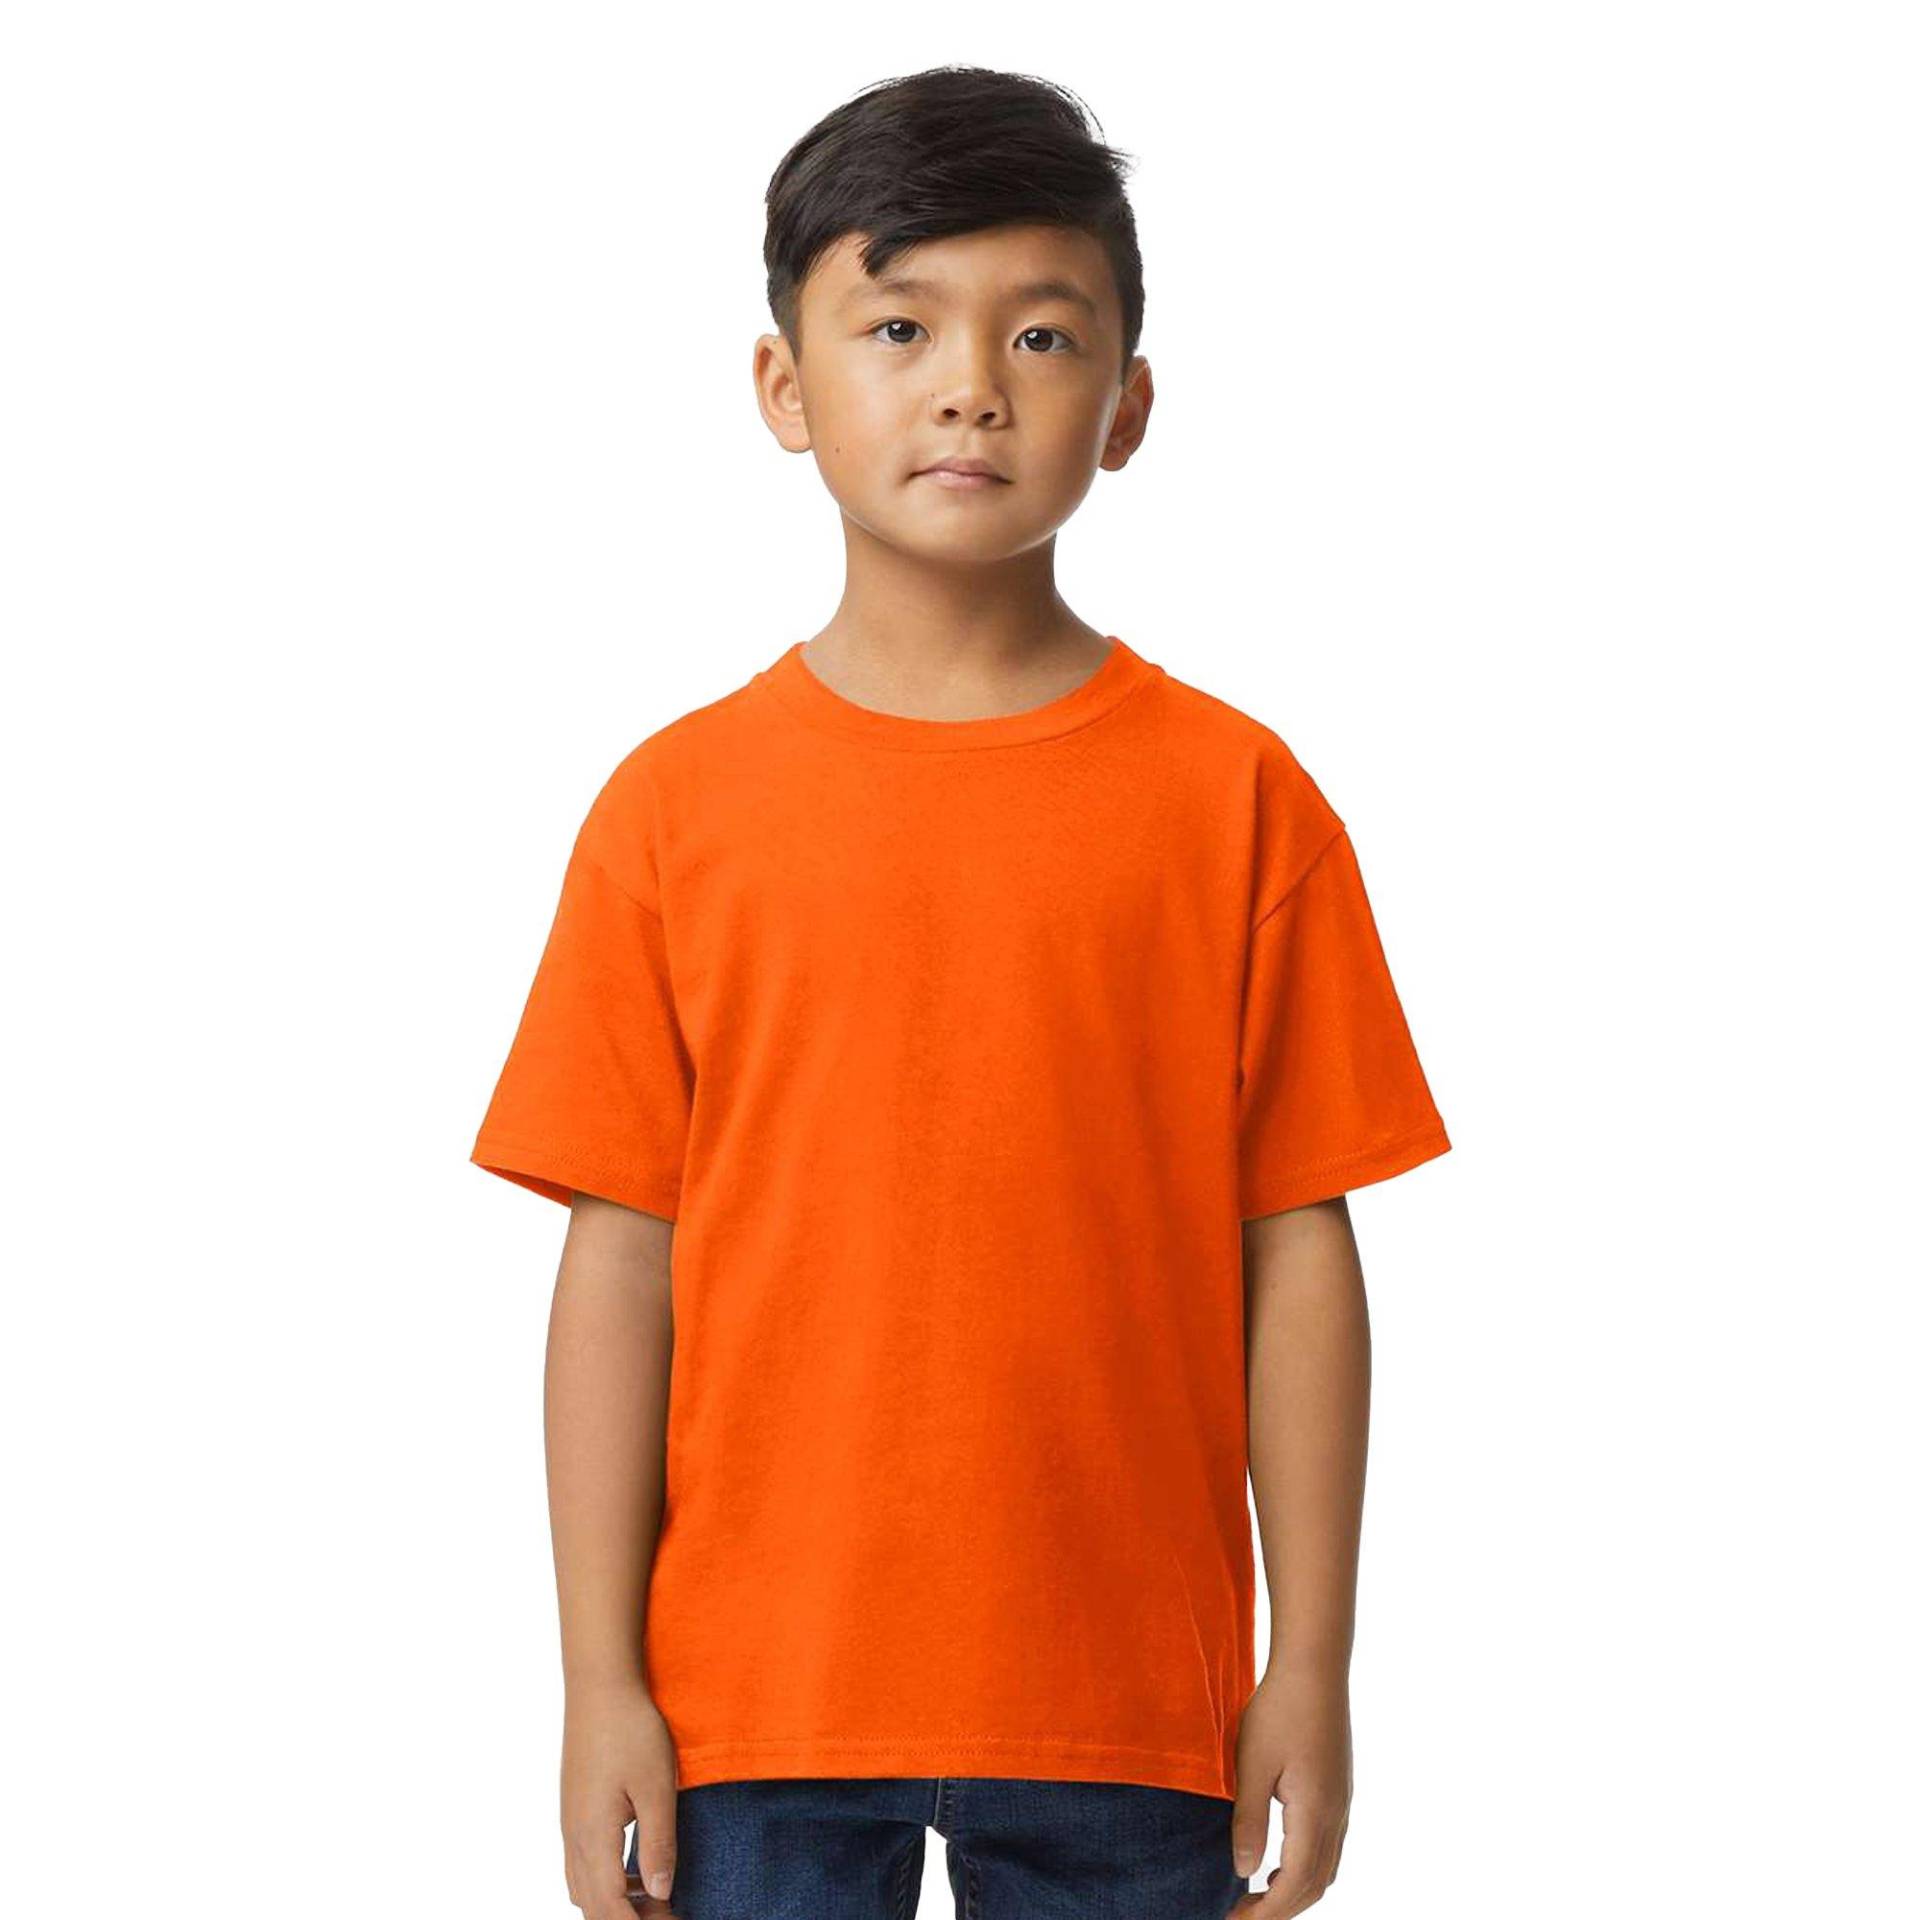 Tshirt Weiche Haptik Mädchen Orange 104 von Gildan